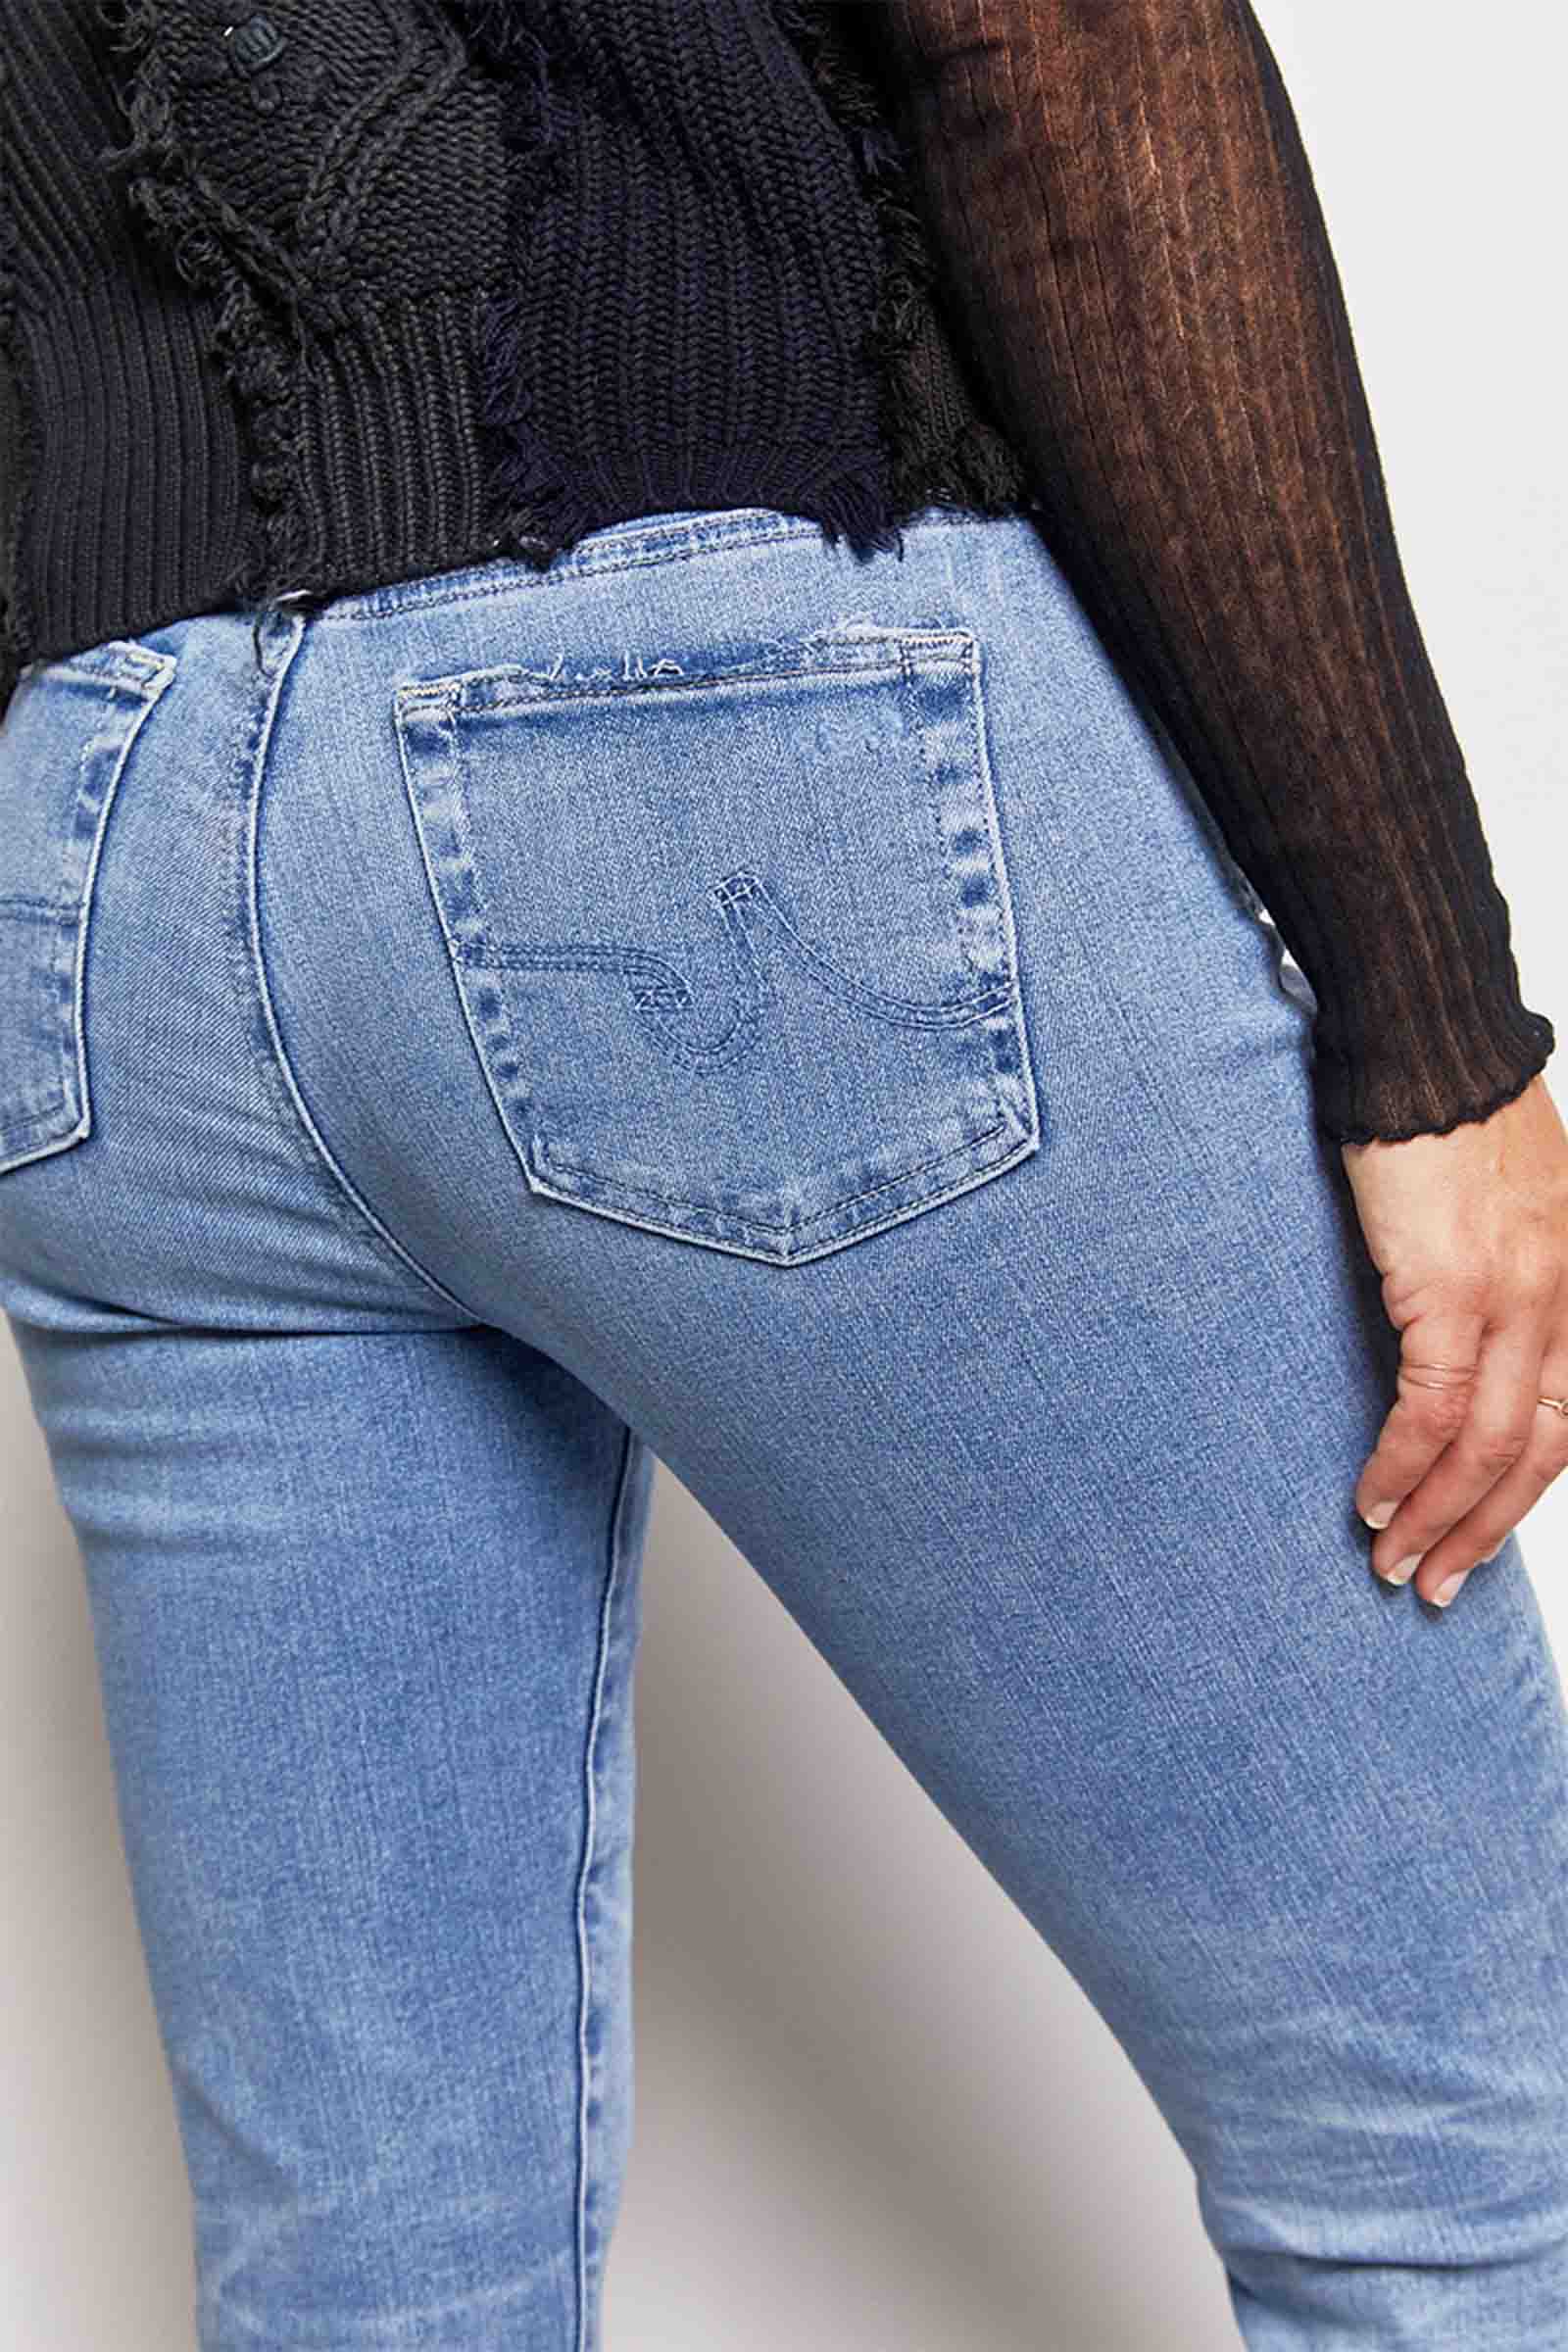 byfreer AG mari crop jeans.